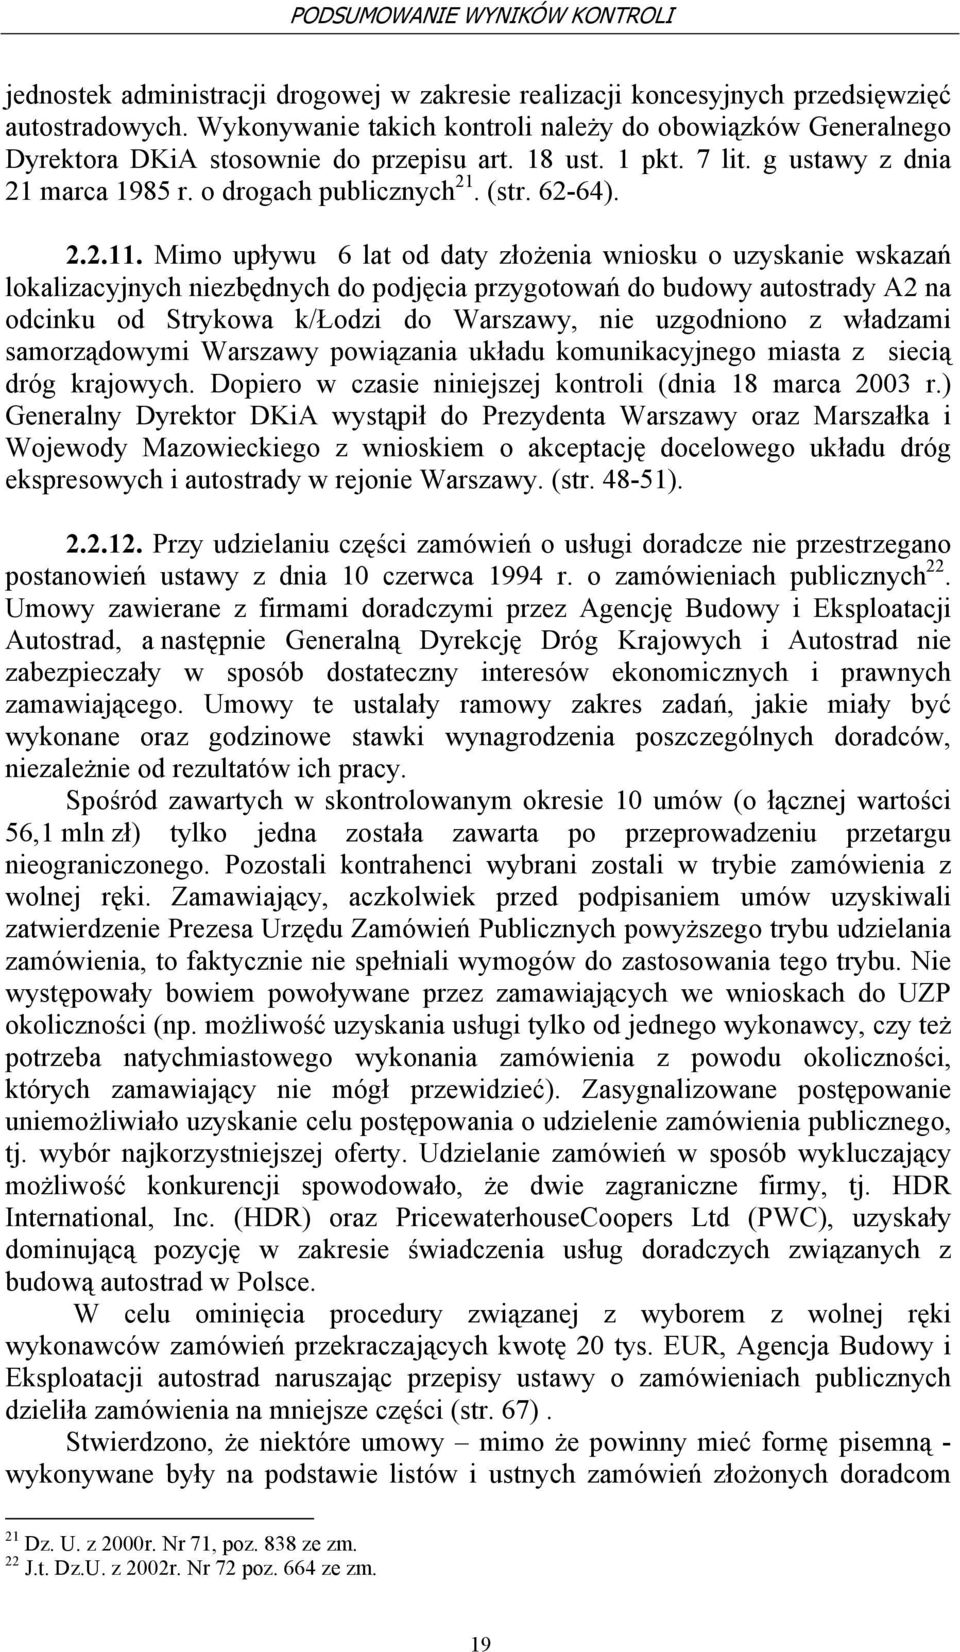 Mimo upływu 6 lat od daty złożenia wniosku o uzyskanie wskazań lokalizacyjnych niezbędnych do podjęcia przygotowań do budowy autostrady A2 na odcinku od Strykowa k/łodzi do Warszawy, nie uzgodniono z